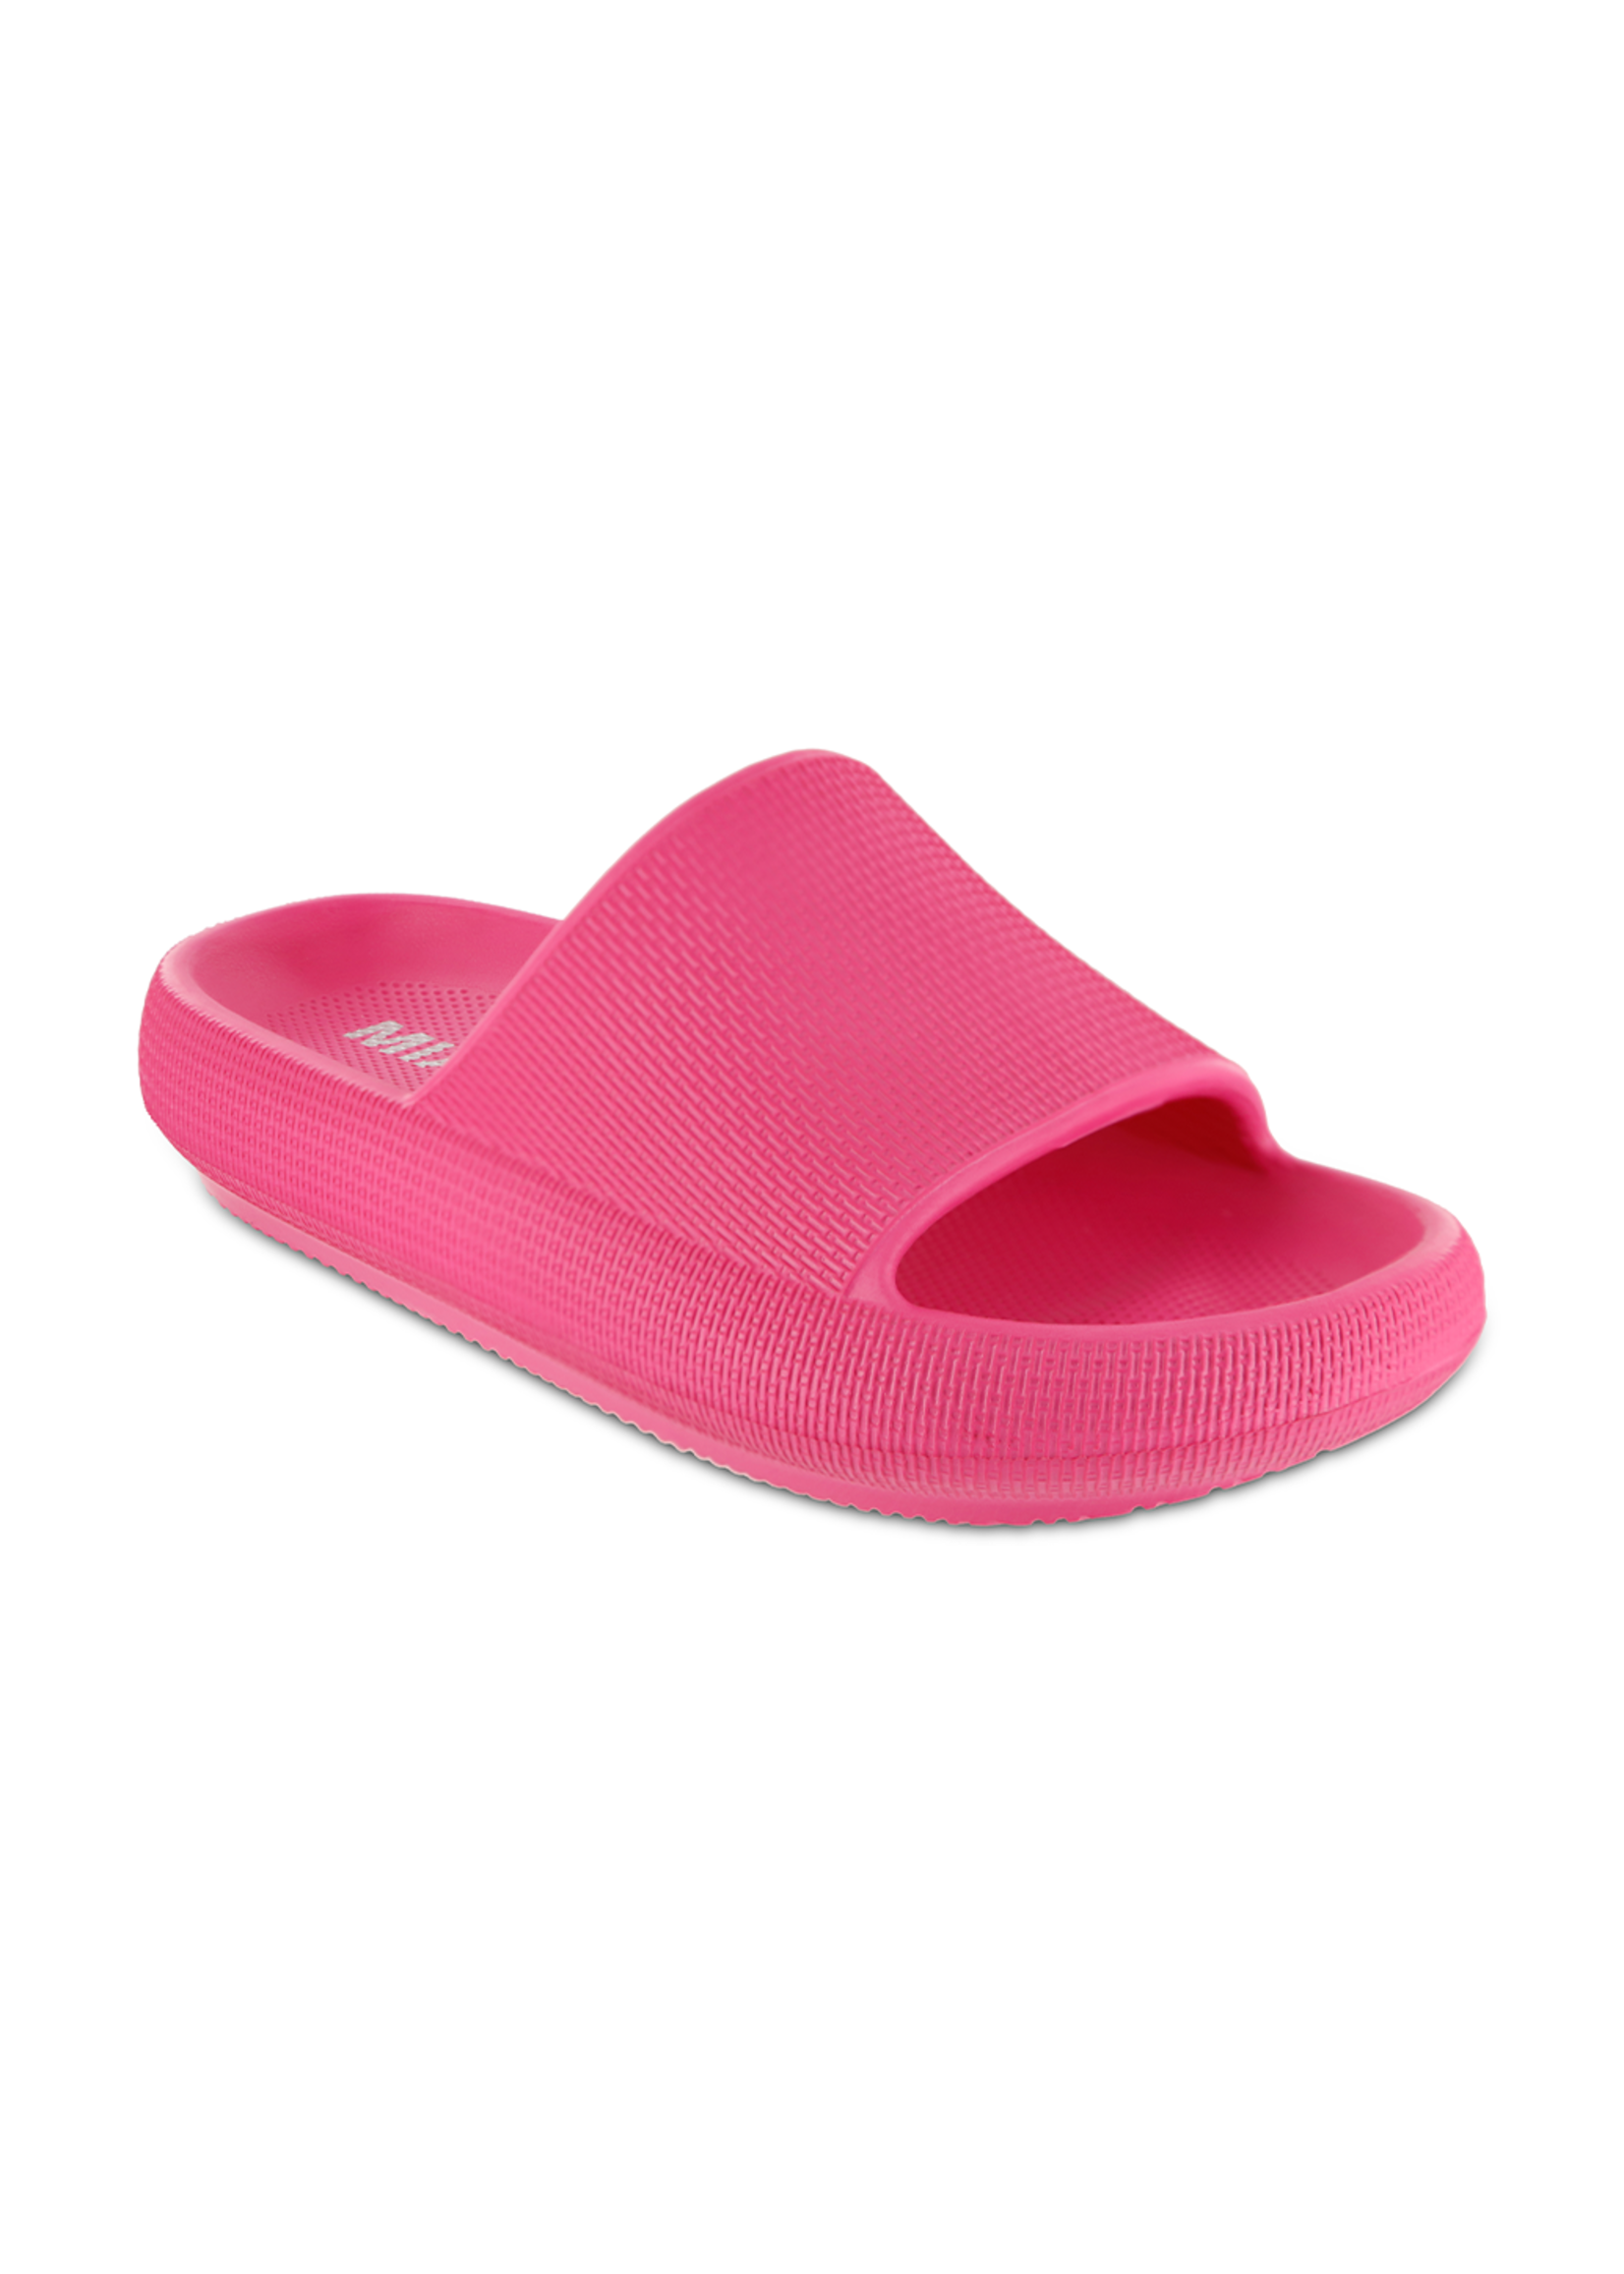 Mia Shoes Lexa EVA Slide in Hot Pink by Mia Footwear